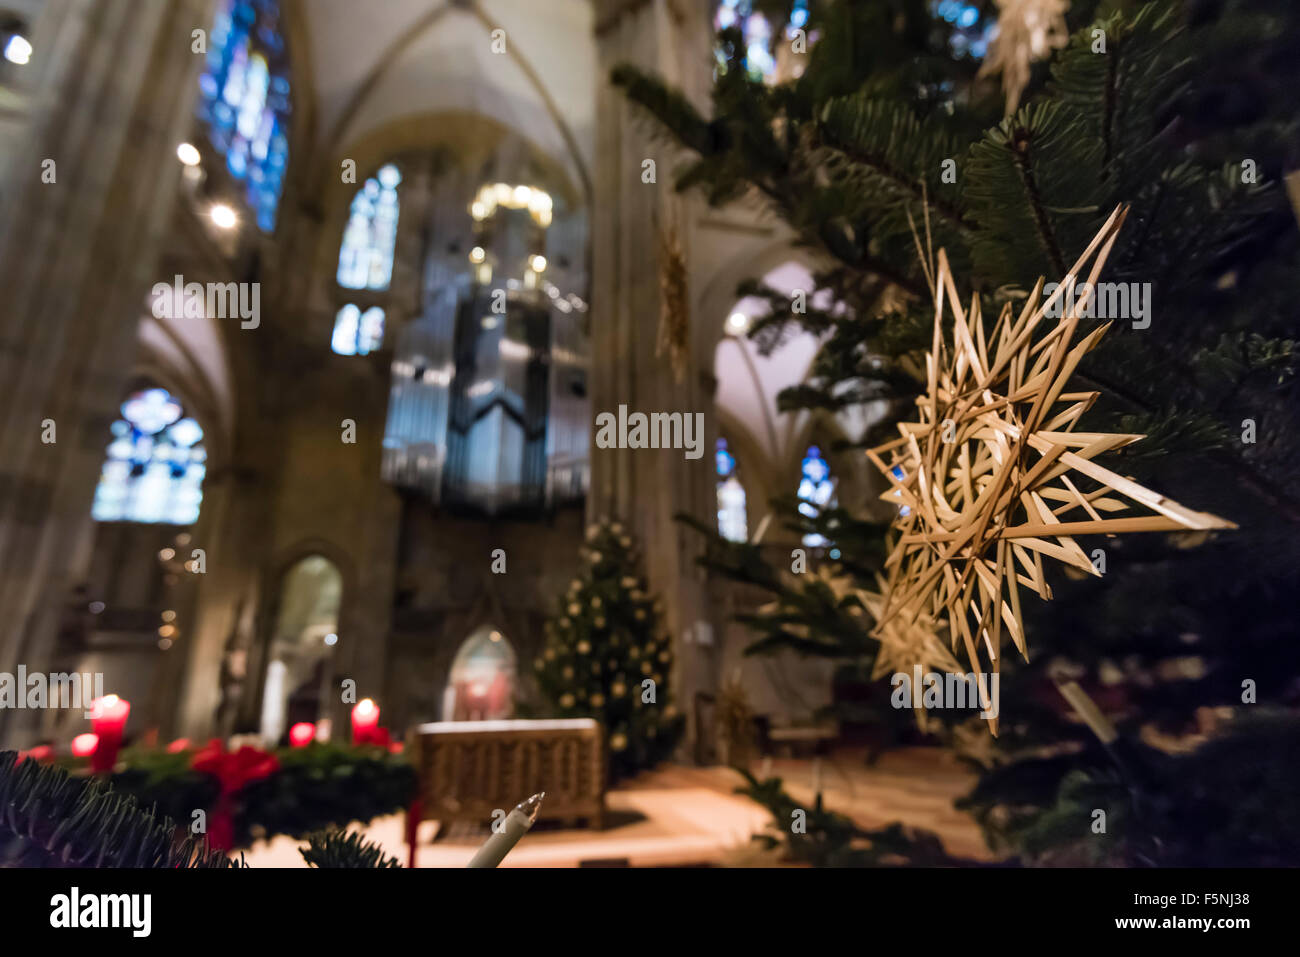 Décoration de Noël à l'intérieur de la cathédrale de Regensburg (Dom) de Saint Pierre, de style gothique monument de Regensburg, Allemagne (Bavière). Banque D'Images